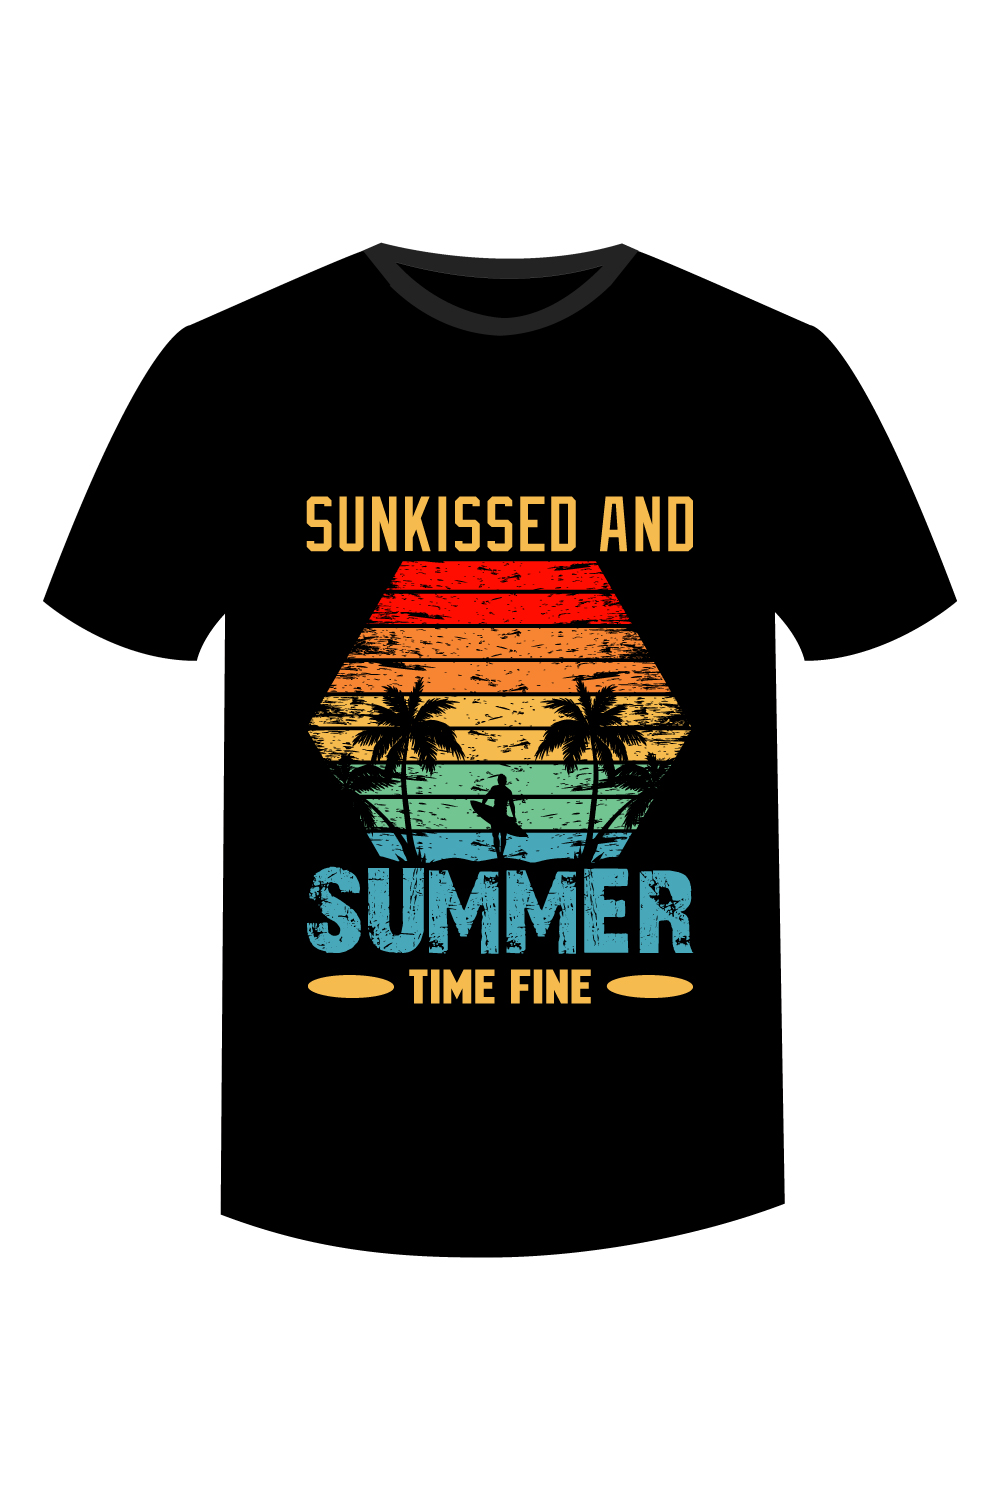 summer t-shirt design pinterest preview image.